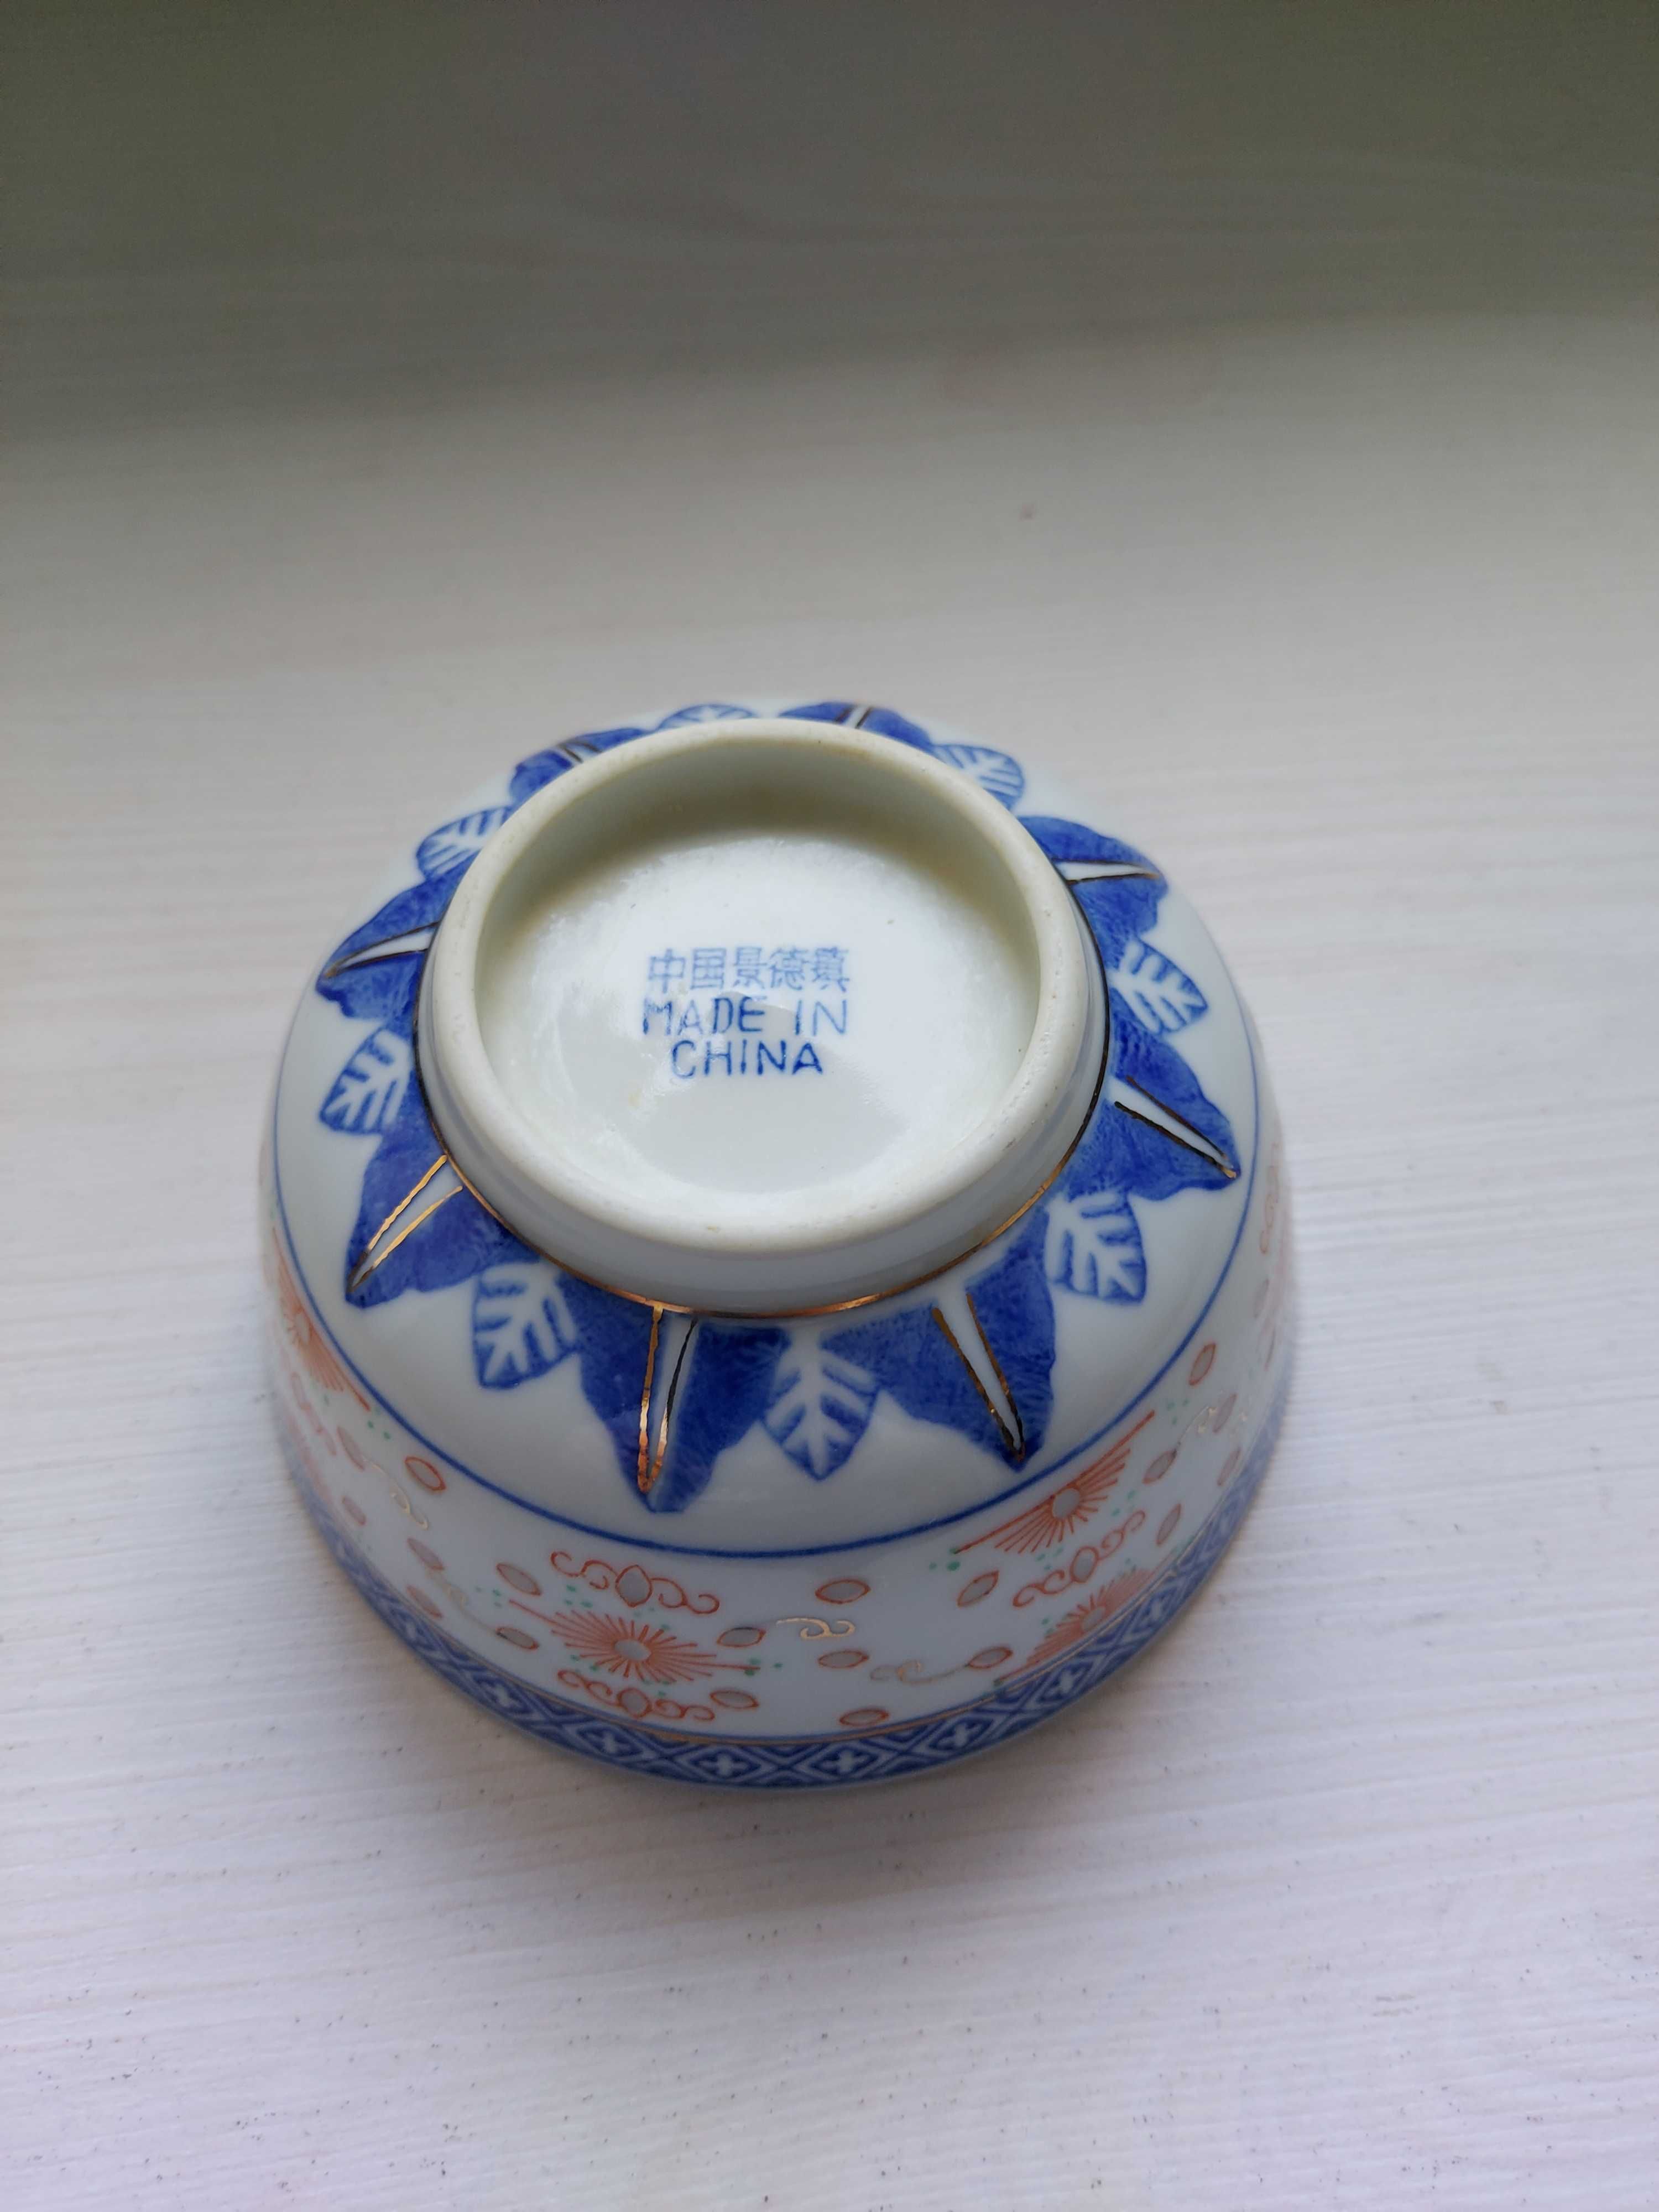 Miseczka chińska porcelanowa tzw. ryżowa używana